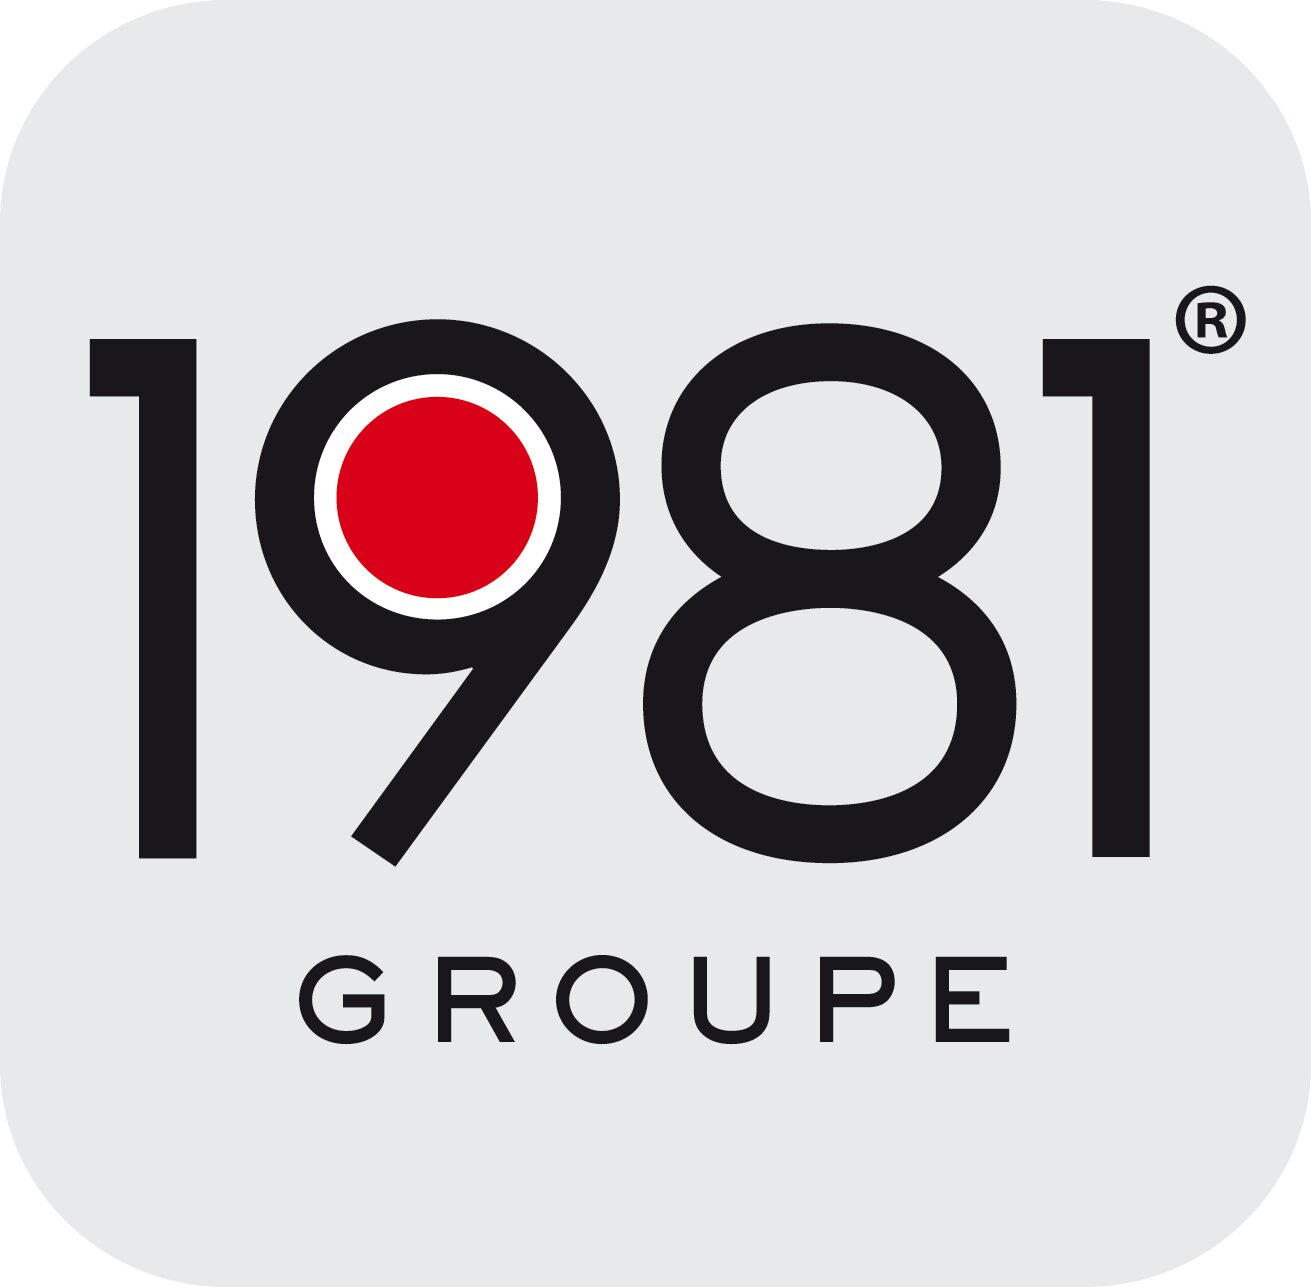 GROUPE 1981 - Commercial(e) terrain - Régie Radio – Ile-de-France (H/F)